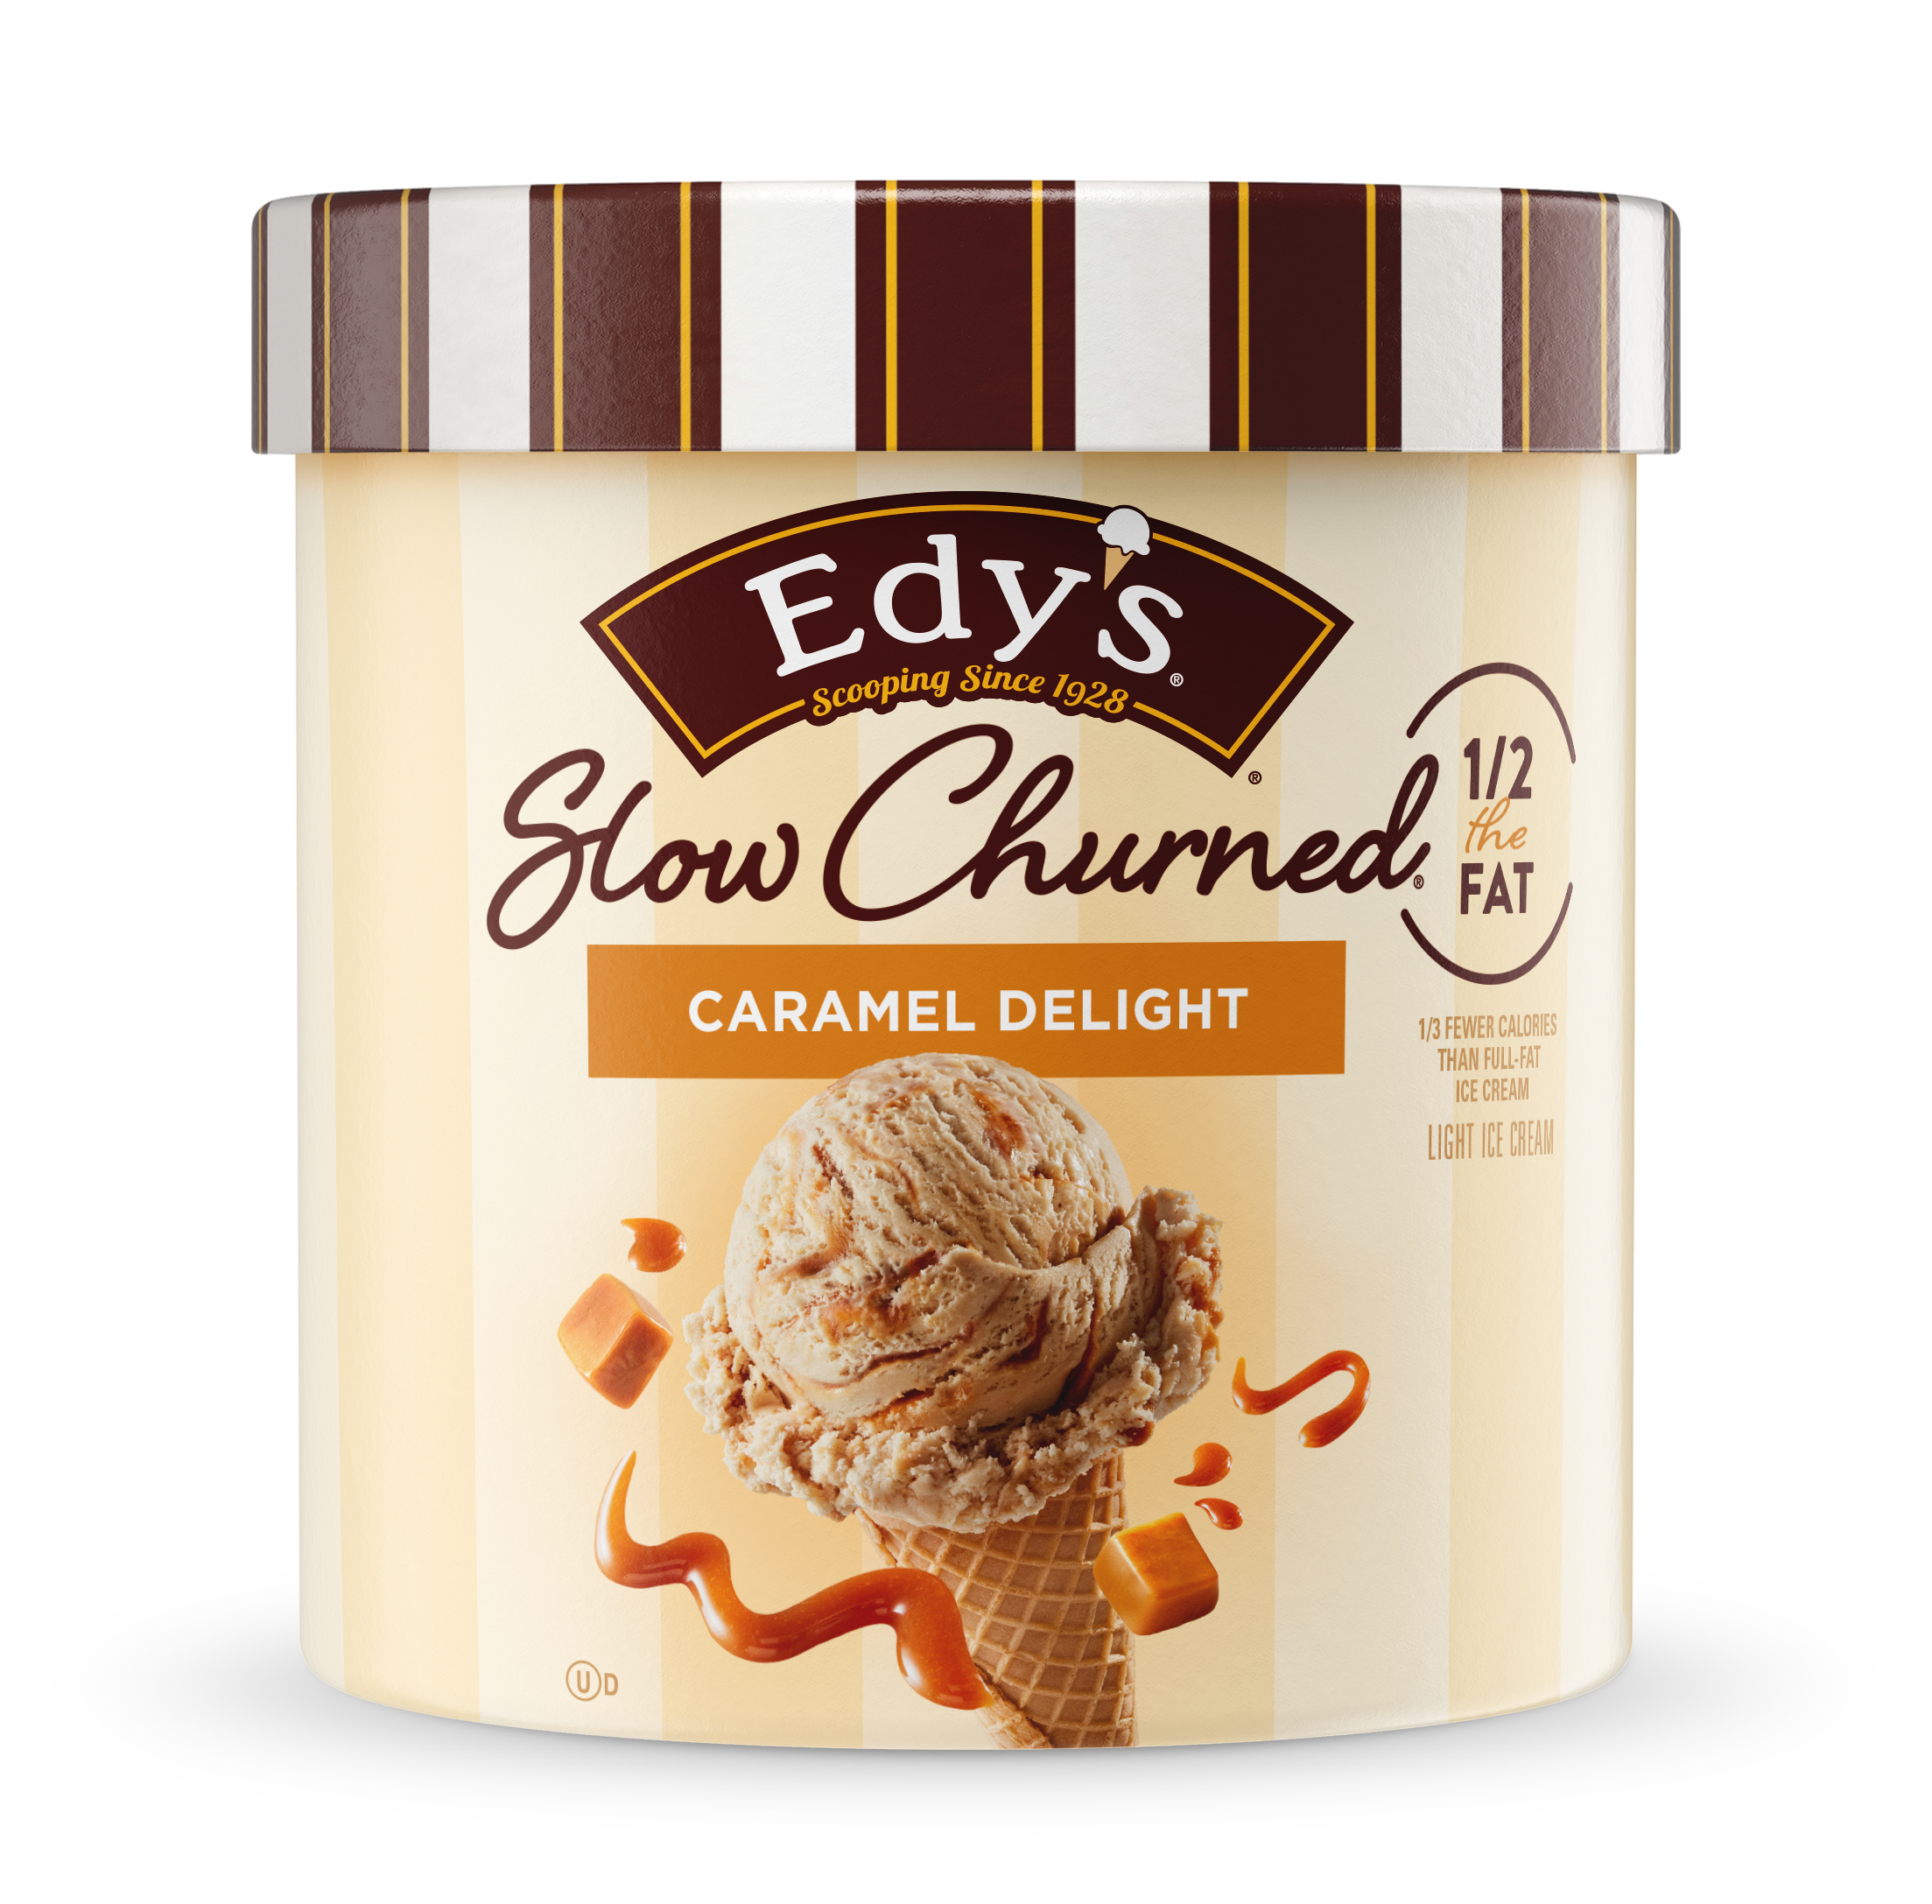 Carton of Edy's slow churned caramel delight ice cream